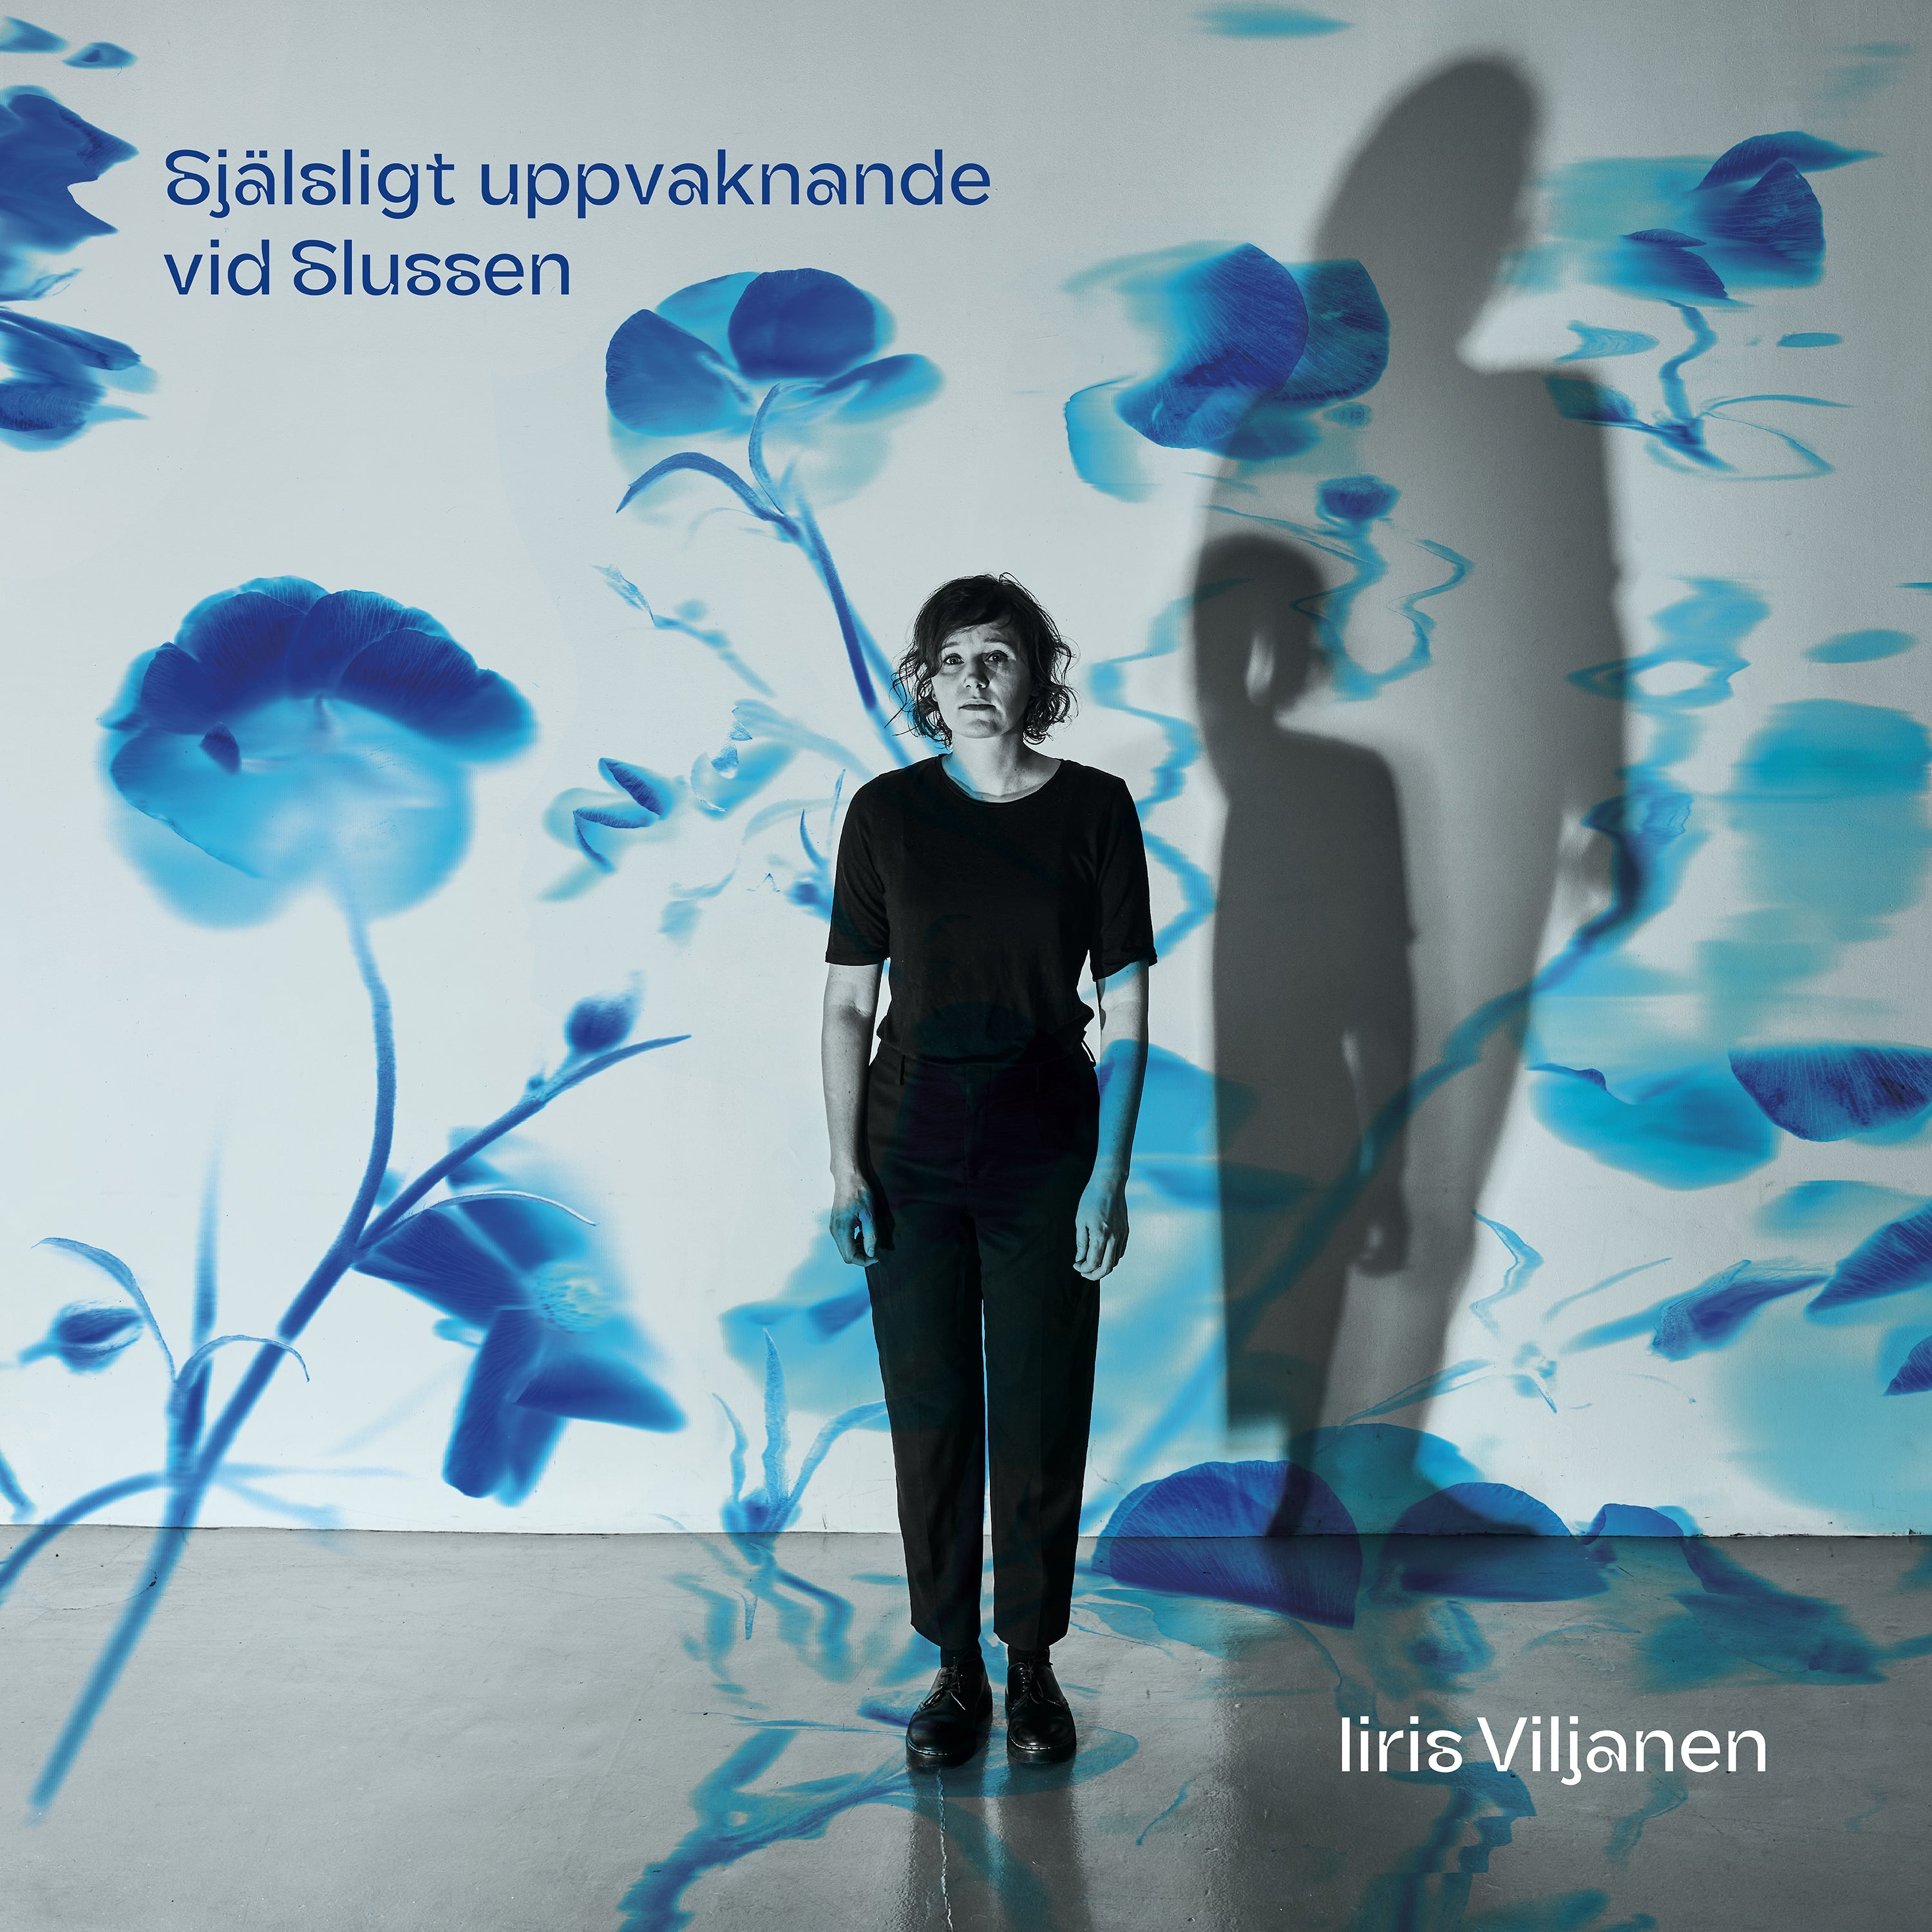 Iiris Viljanen - Själsligt uppvaknande vid Slussen (CD) - Signerad